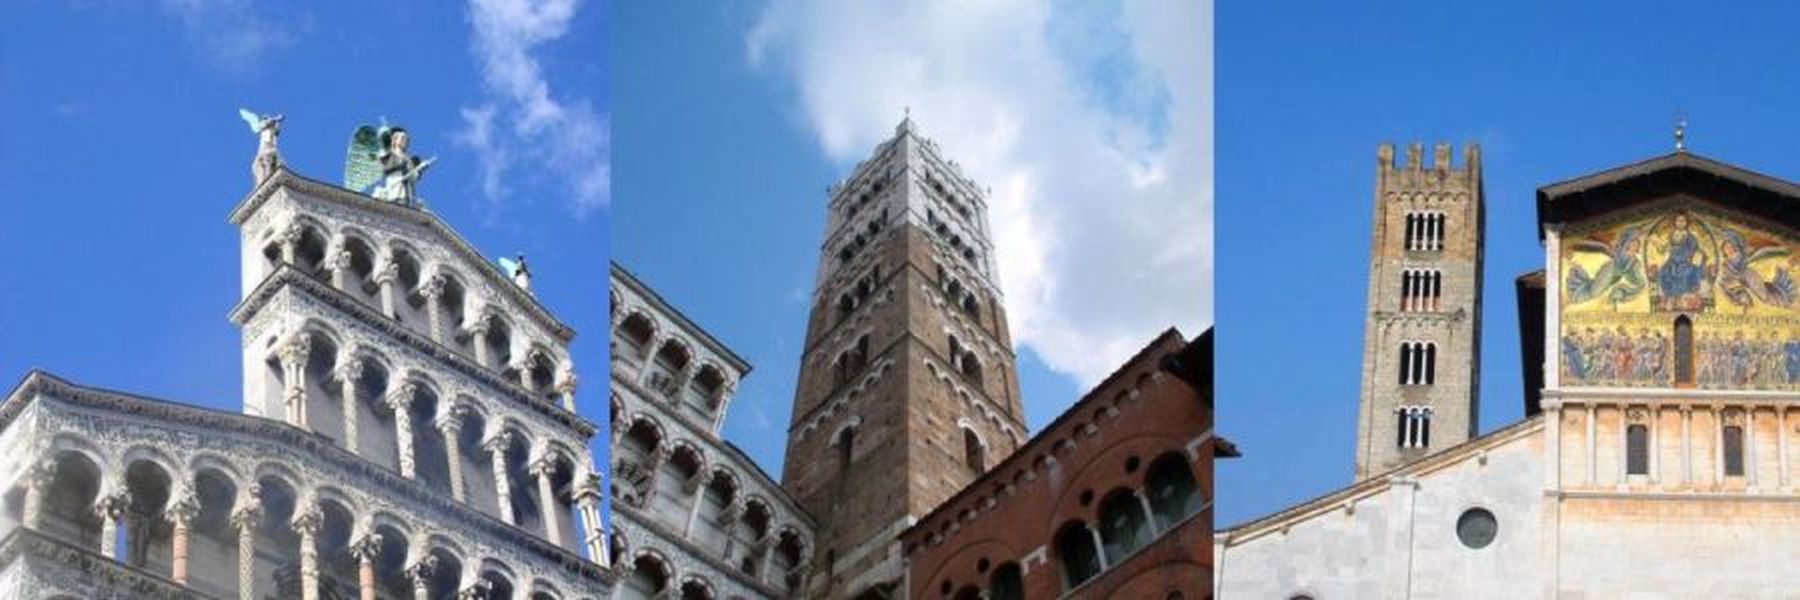 3 großen Kirchen von Lucca